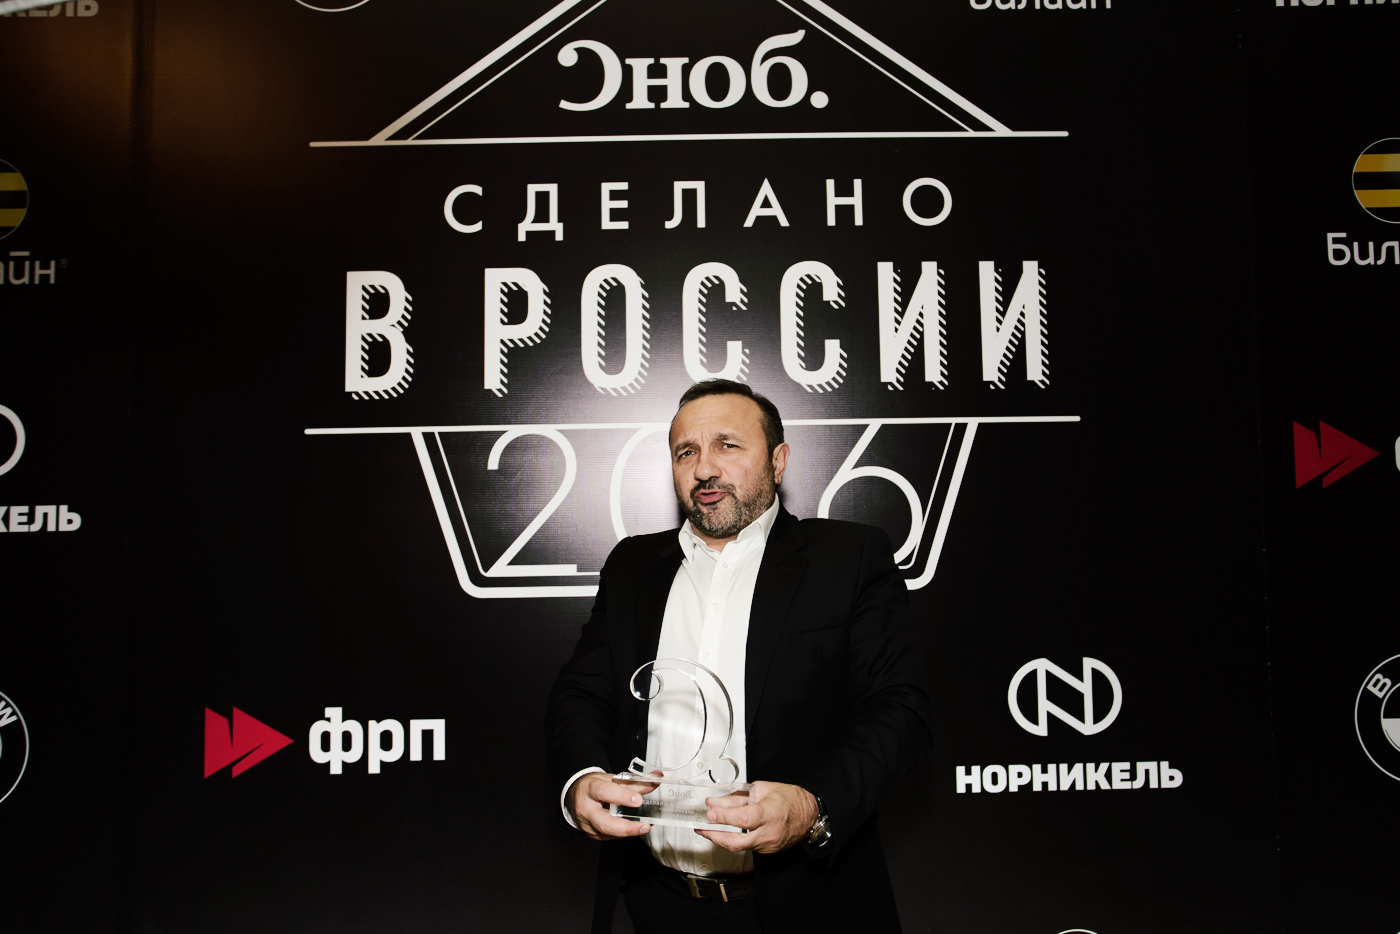 Победитель в номинации «Компания» Дмитрий Морозов